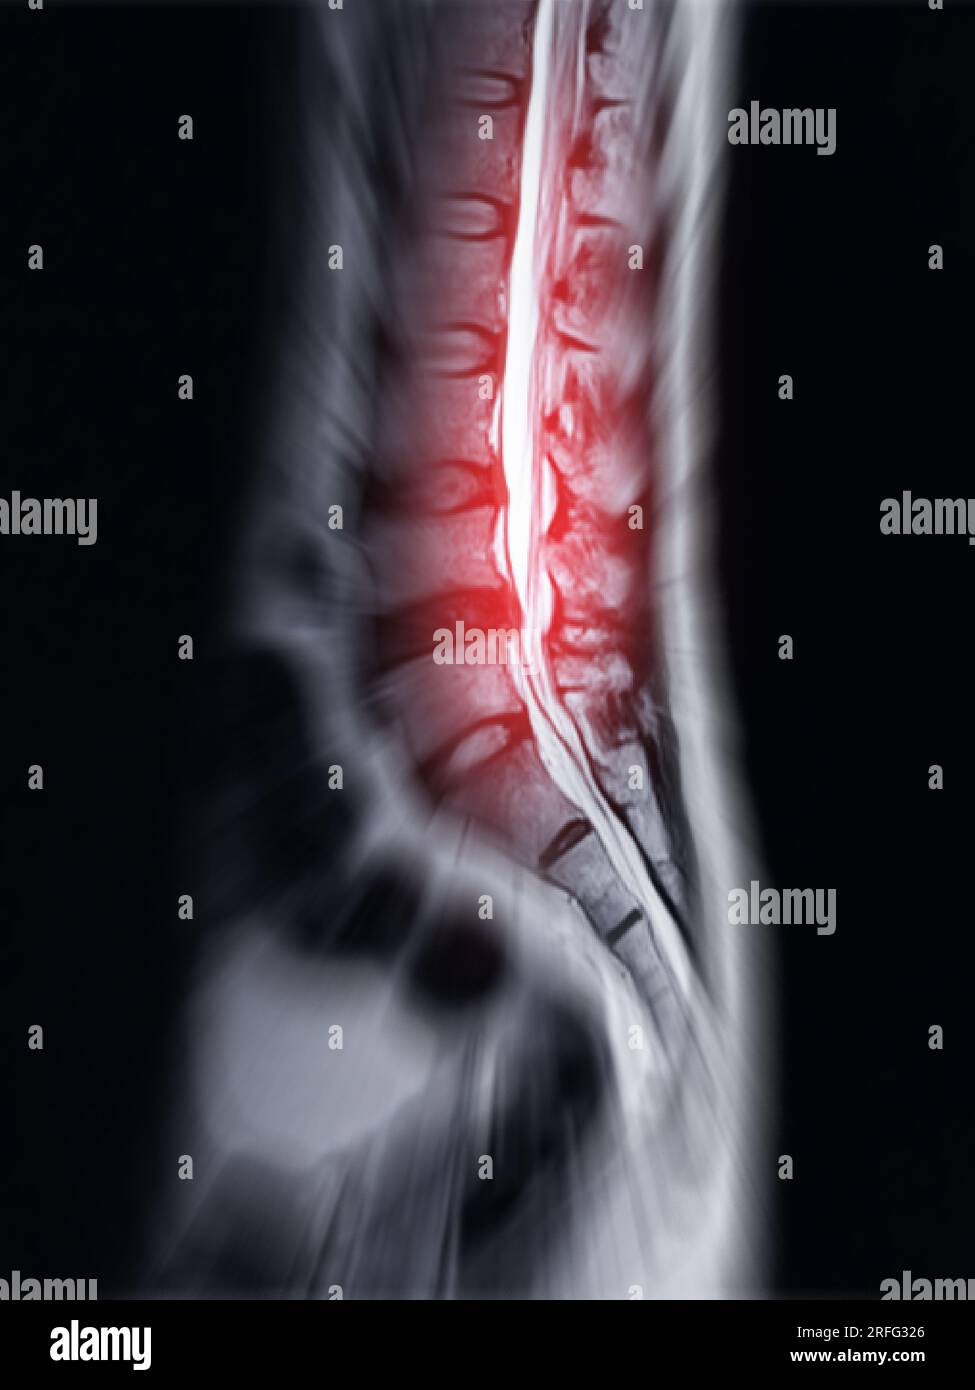 Vista RM colonna vertebrale L-S o colonna lombare Sagittall T2W per diagnosi compressione del midollo spinale. Foto Stock